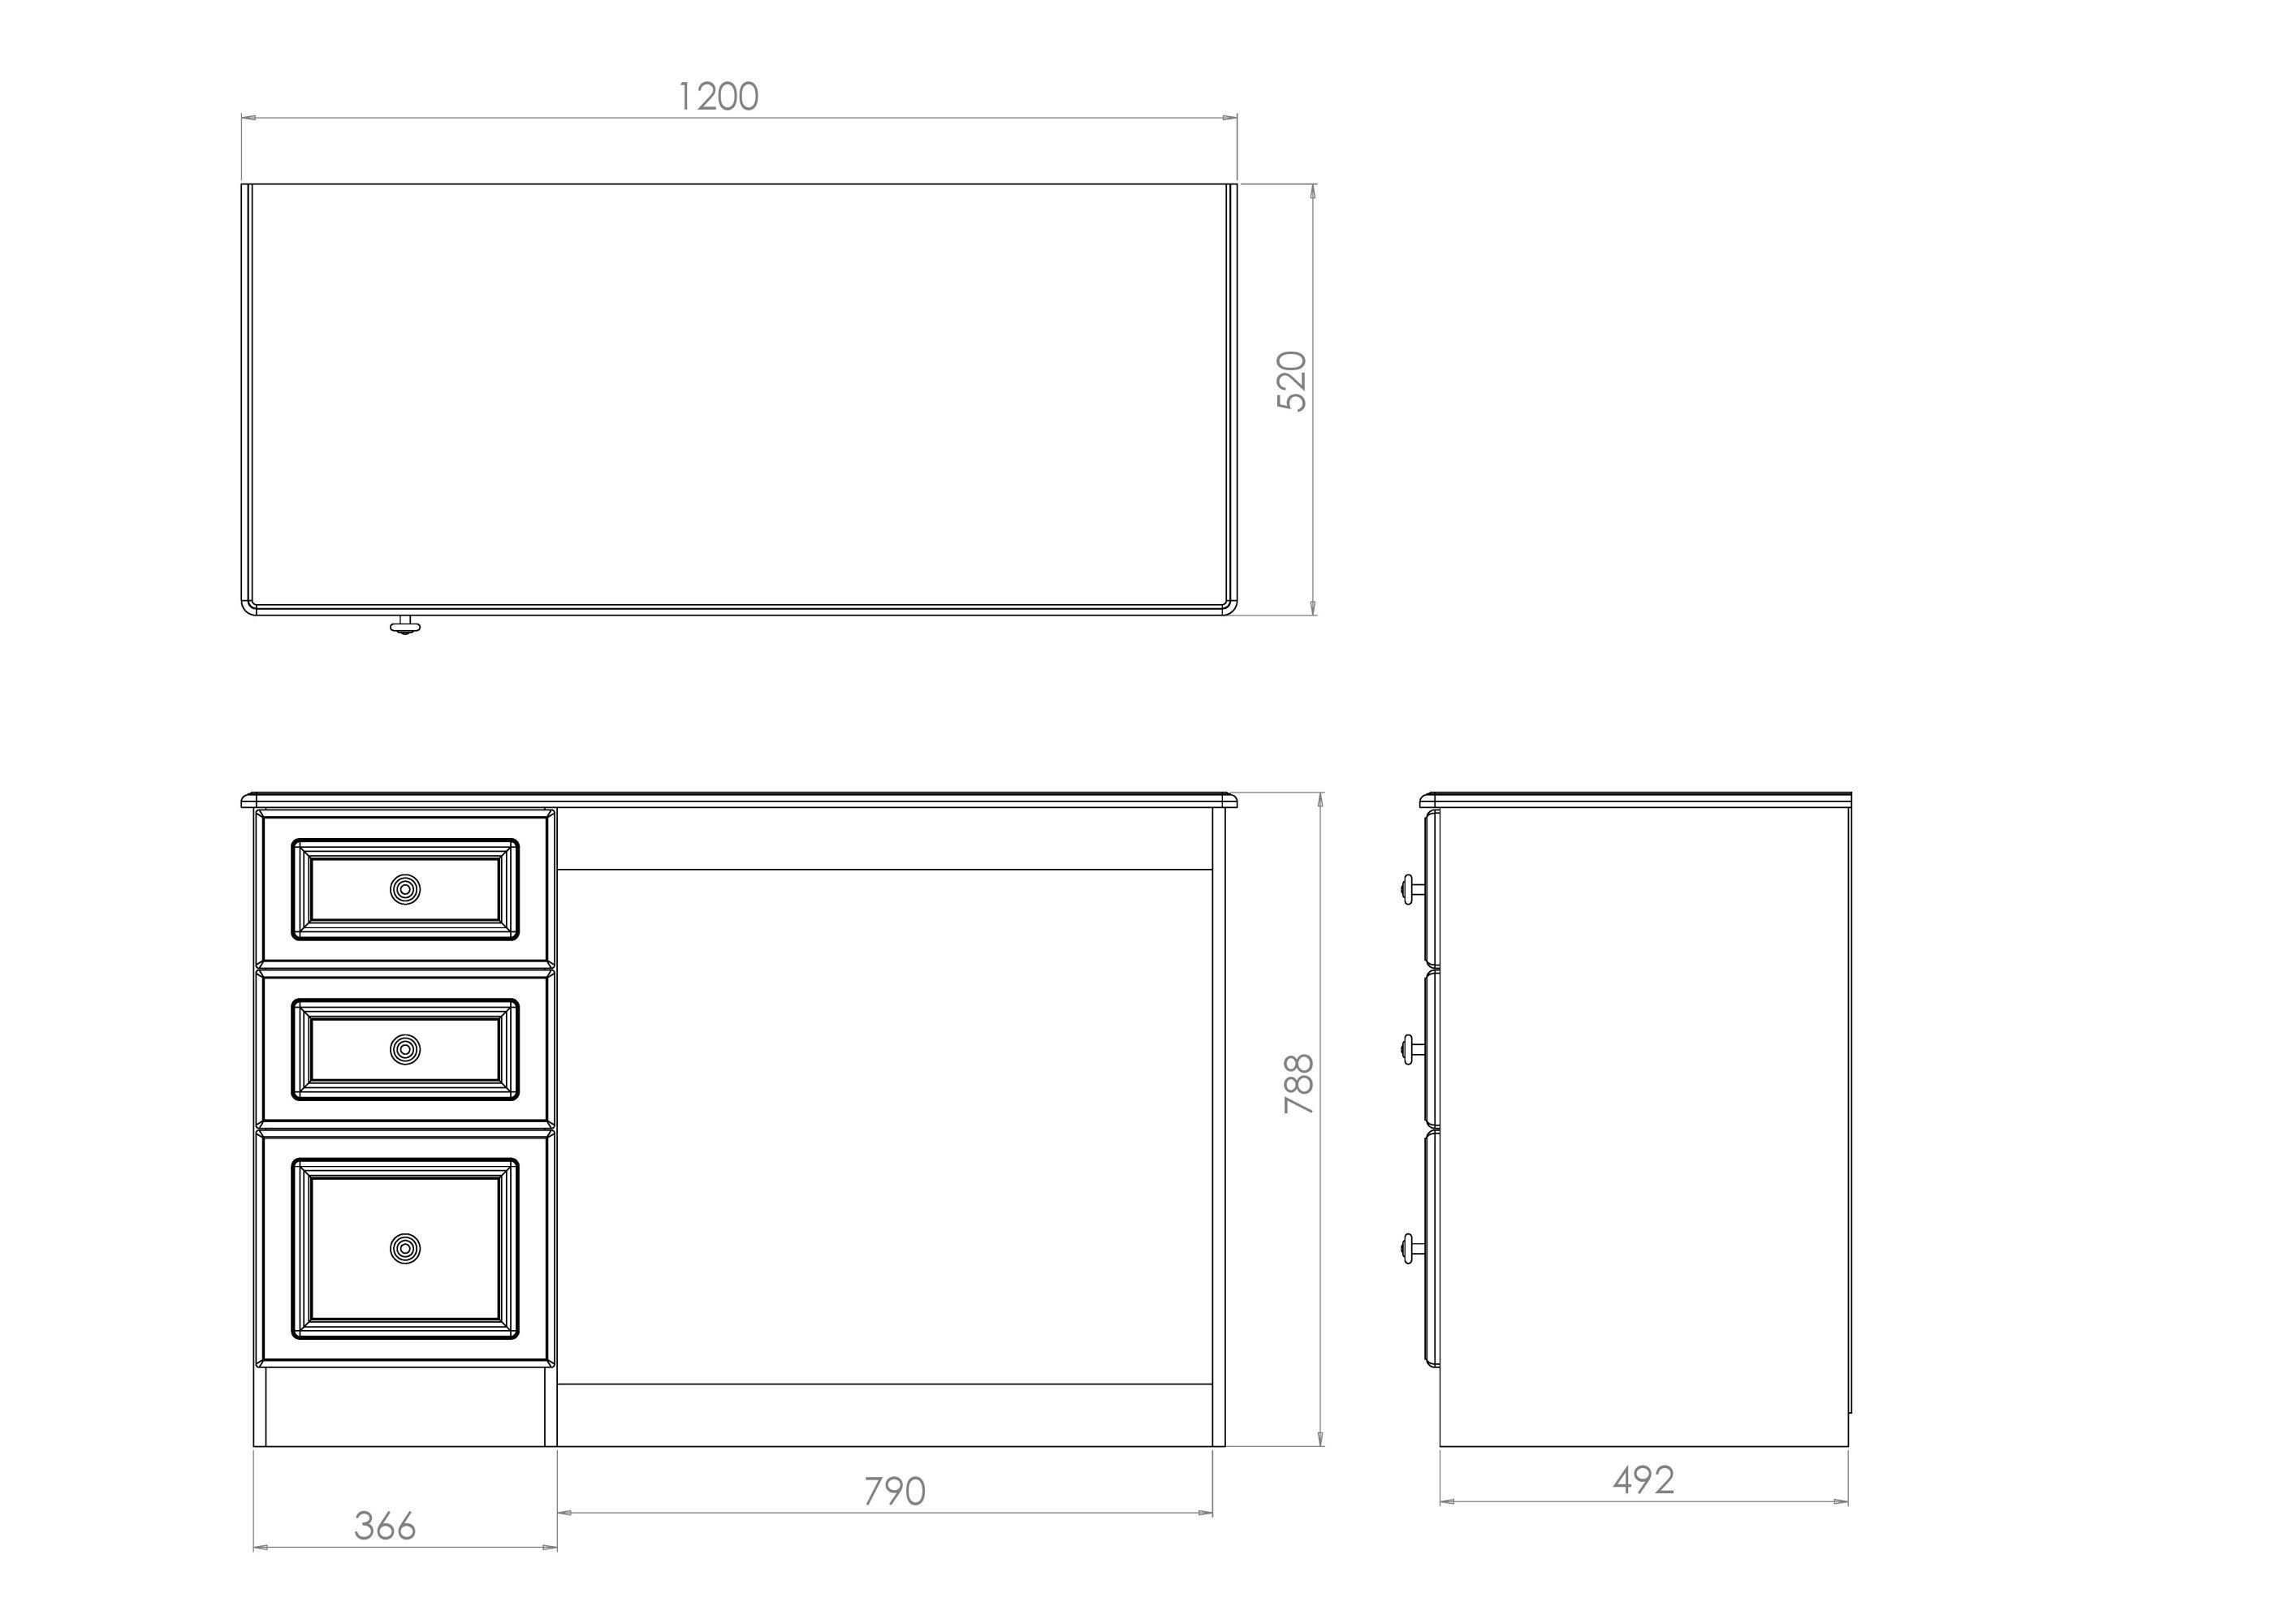 Ready assembled Matt white 3 drawer Desk (H)795mm (W)540mm (D)540mm